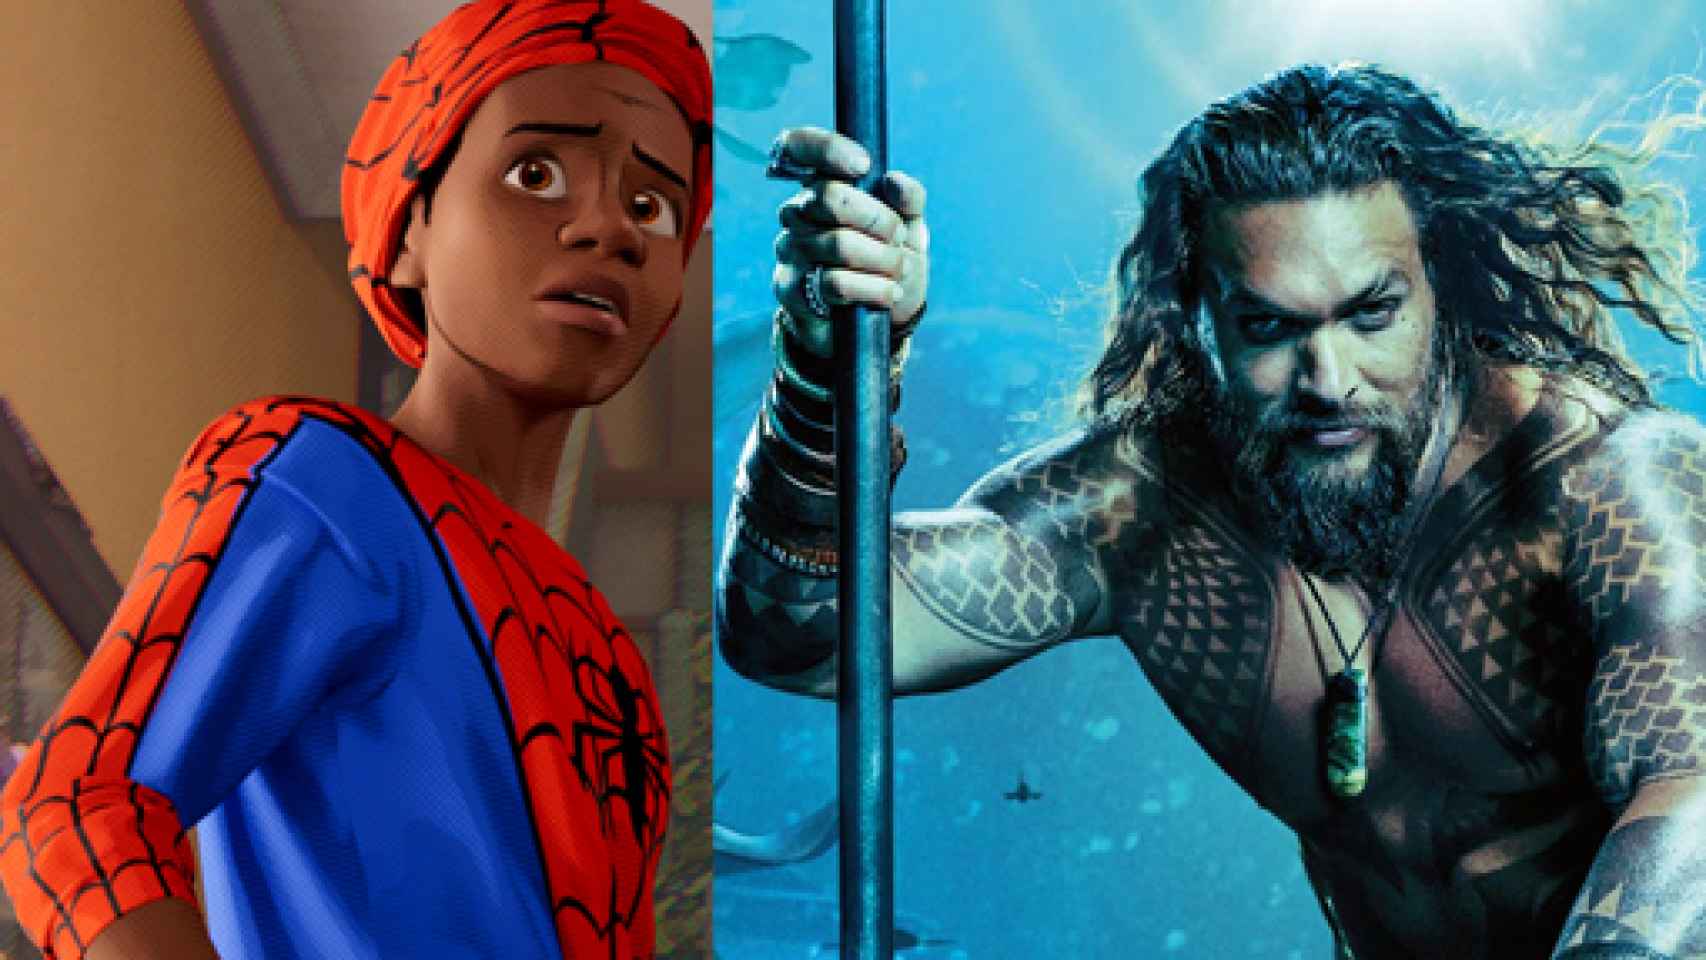 Image: Spider-Man vs Aquaman: hacerse mayor en Hollywood